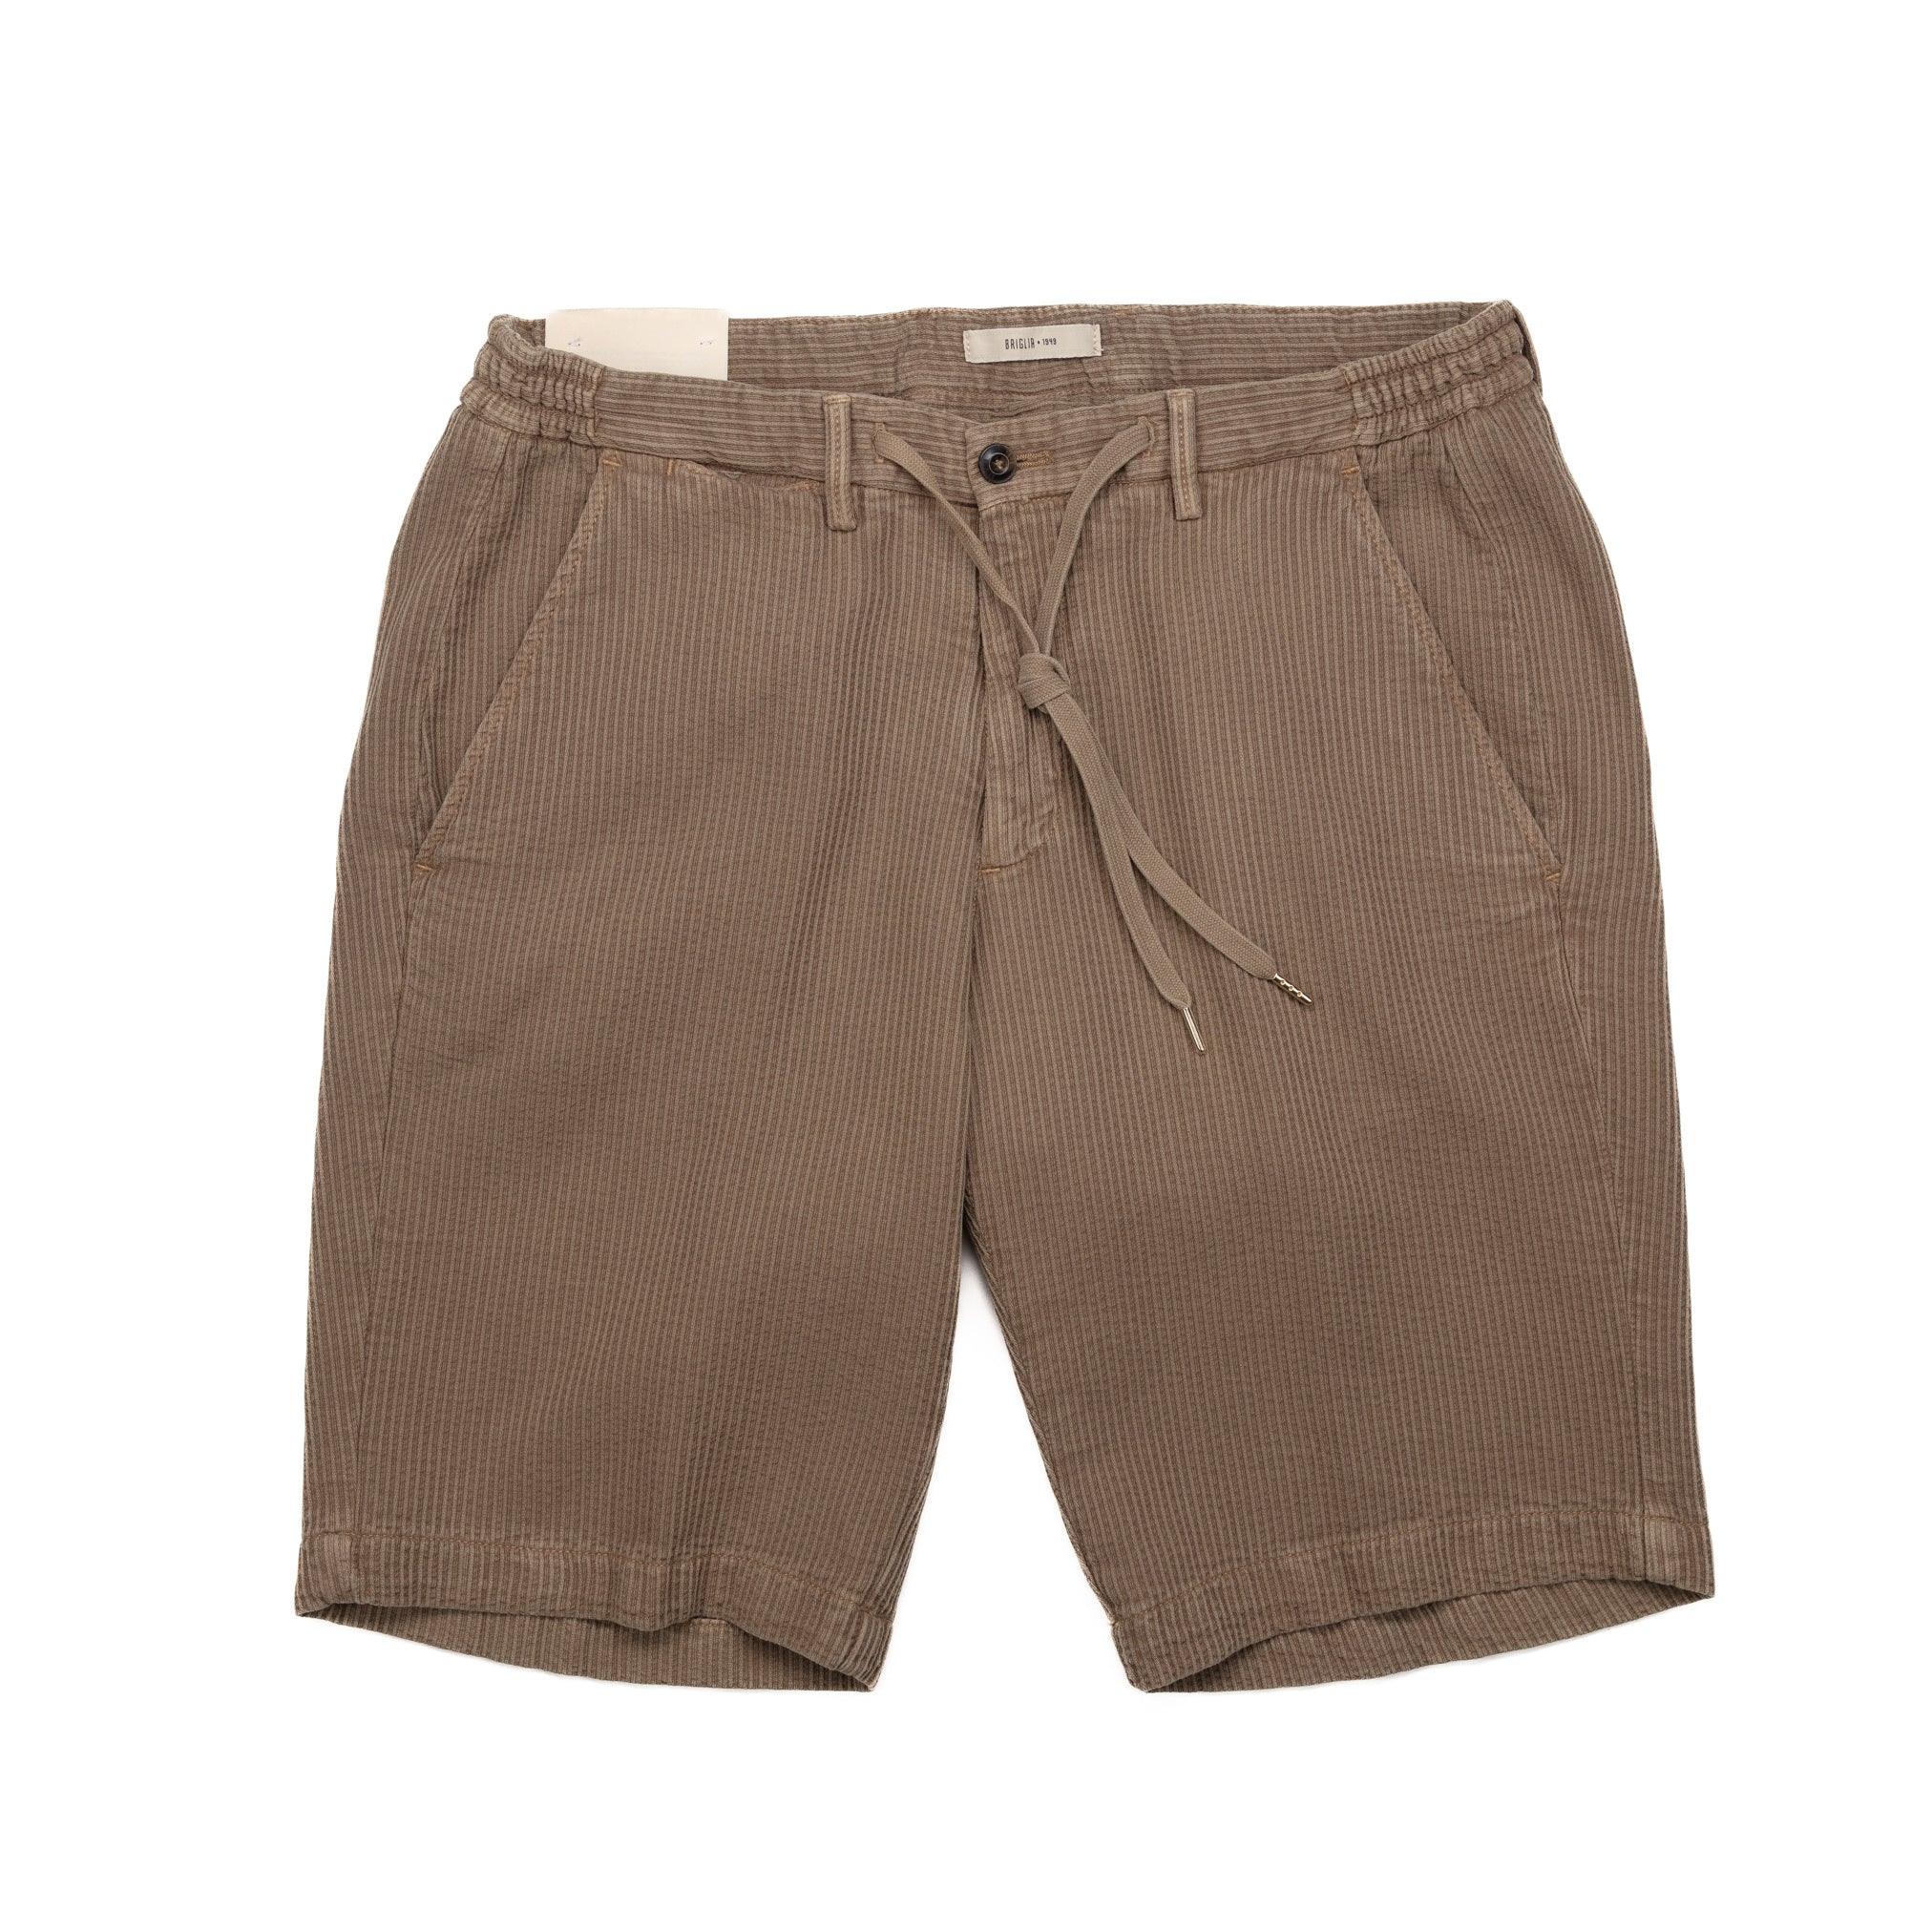 Malibu Shorts in Tan